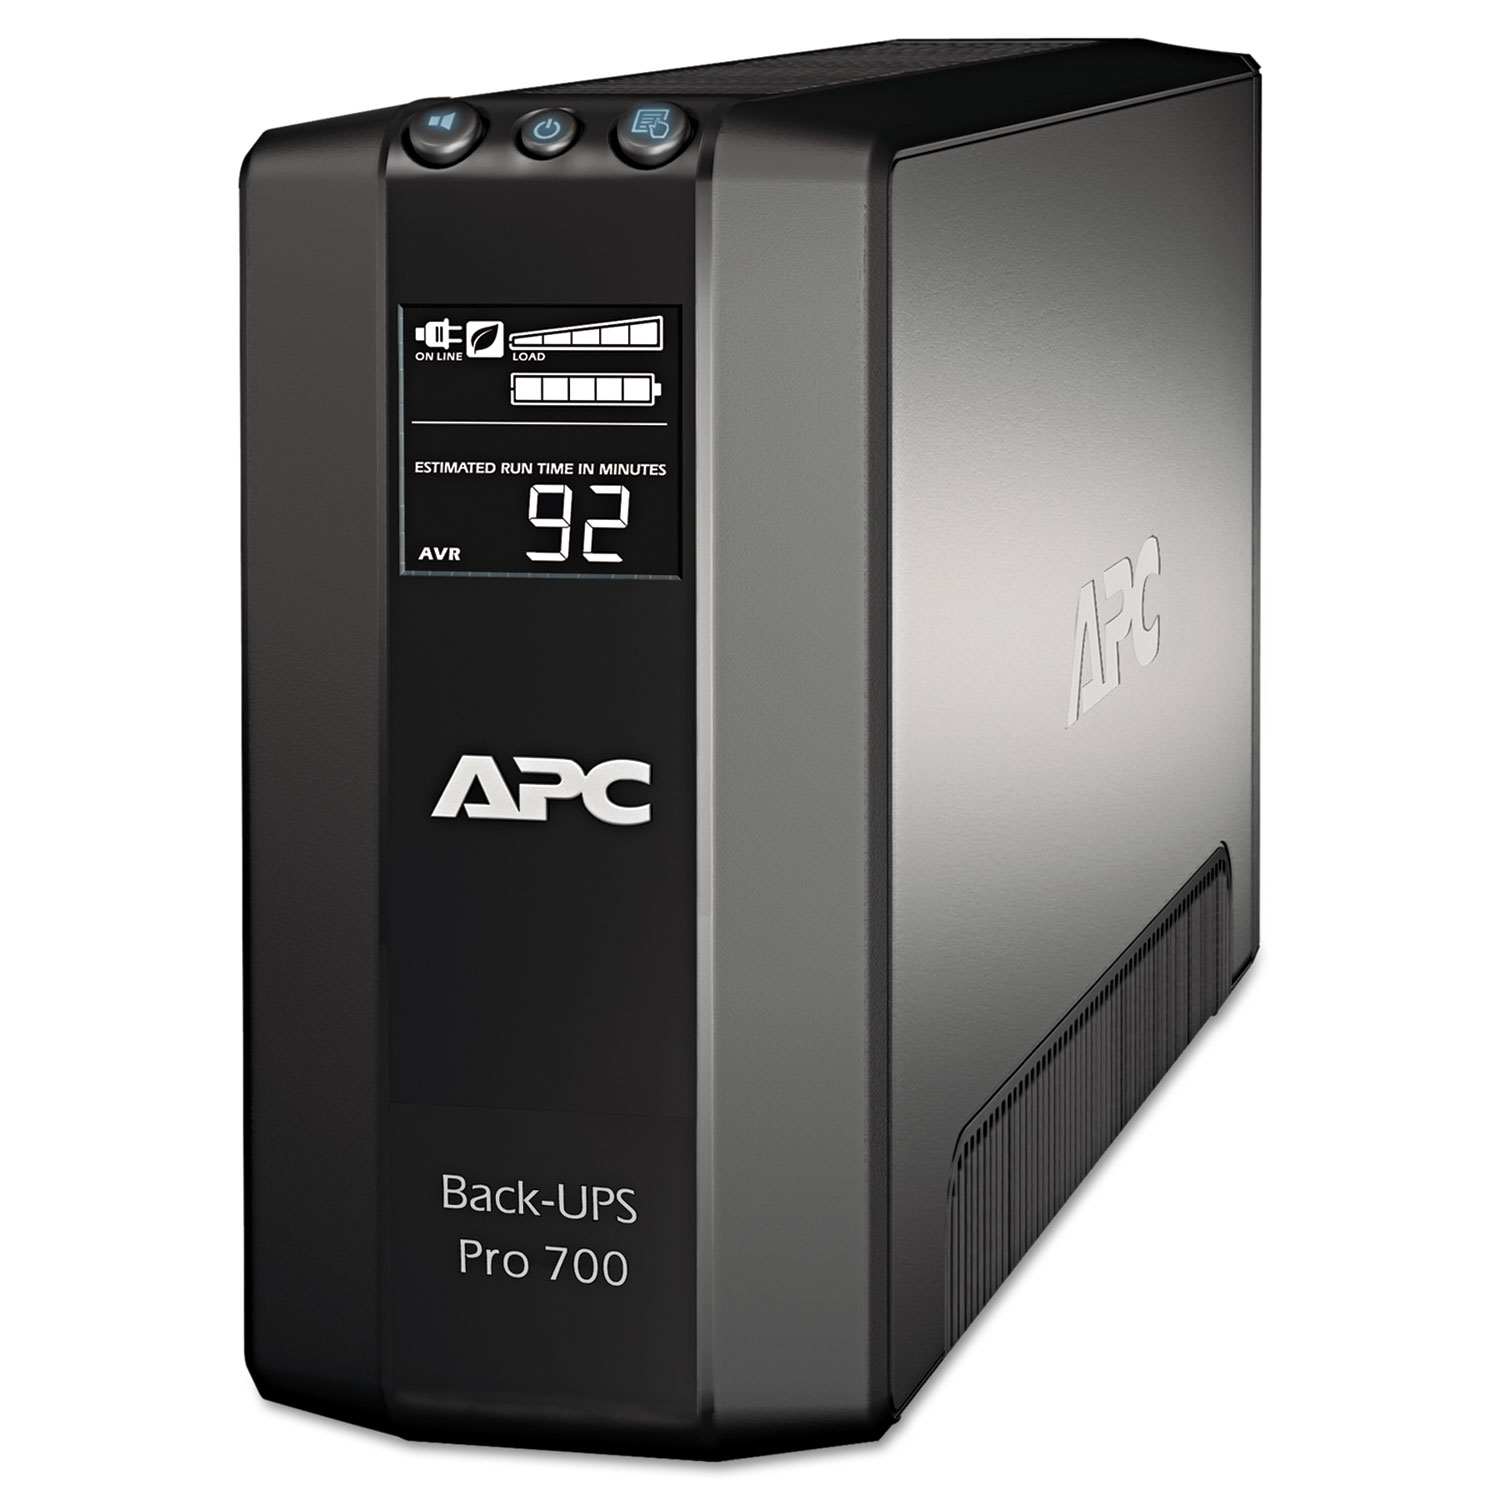  APC BR700G BR700G Back-UPS Pro 700 Battery Backup System, 6 Outlets, 700 VA, 355 J (APWBR700G) 